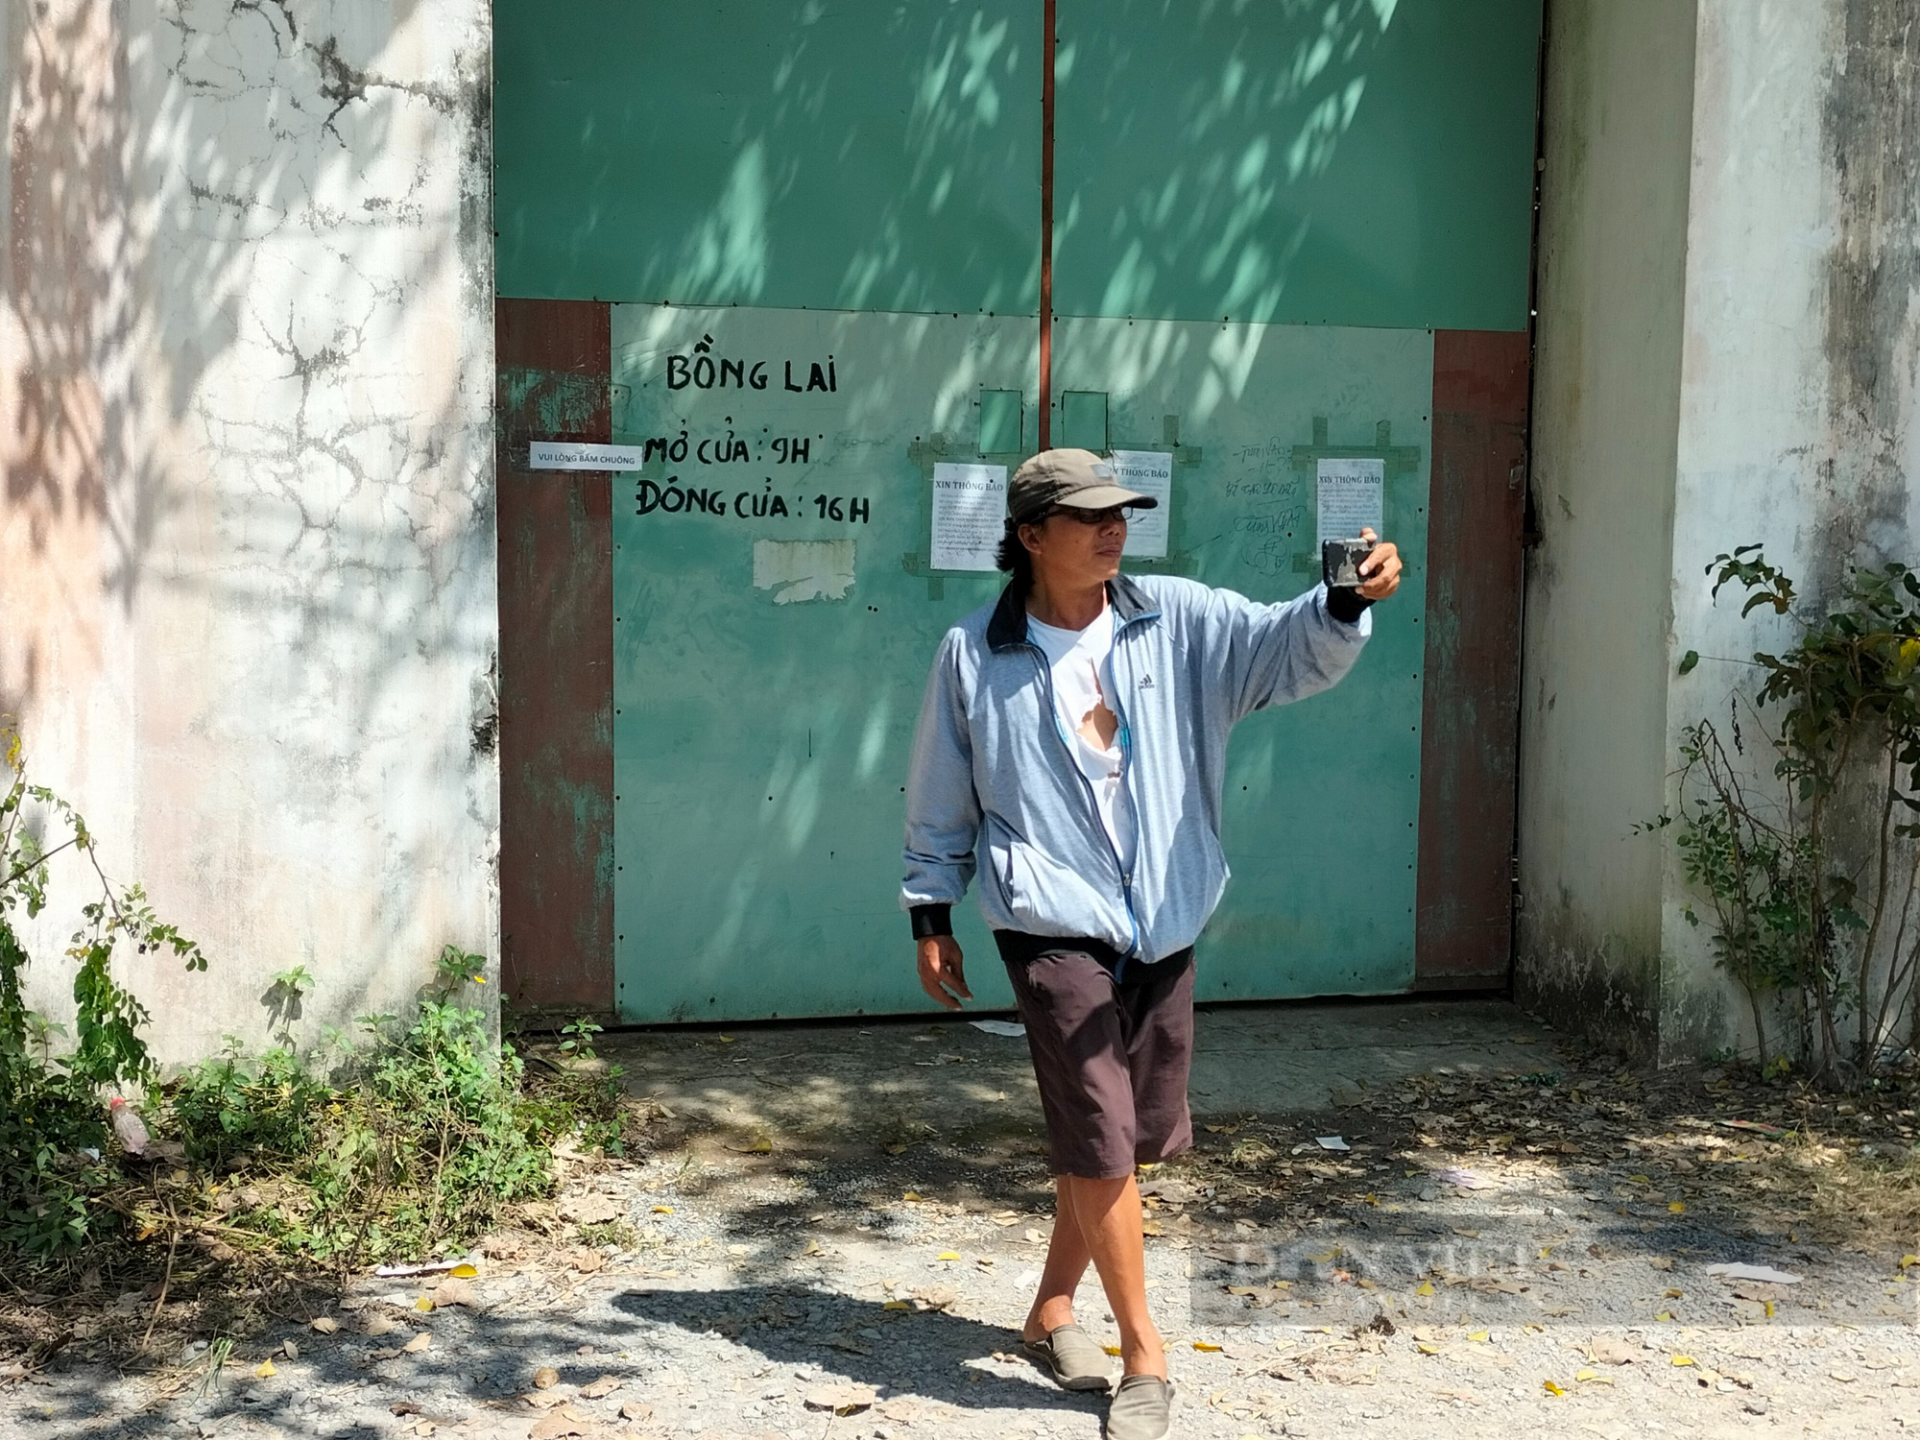 Tịnh Thất Bồng Lai khiến dân tình dậy sóng khi 'mặc áo quá đầu' giữa lùm xùm, ai nấy nháo nhác mong muốn pháp luật phán quyết 2